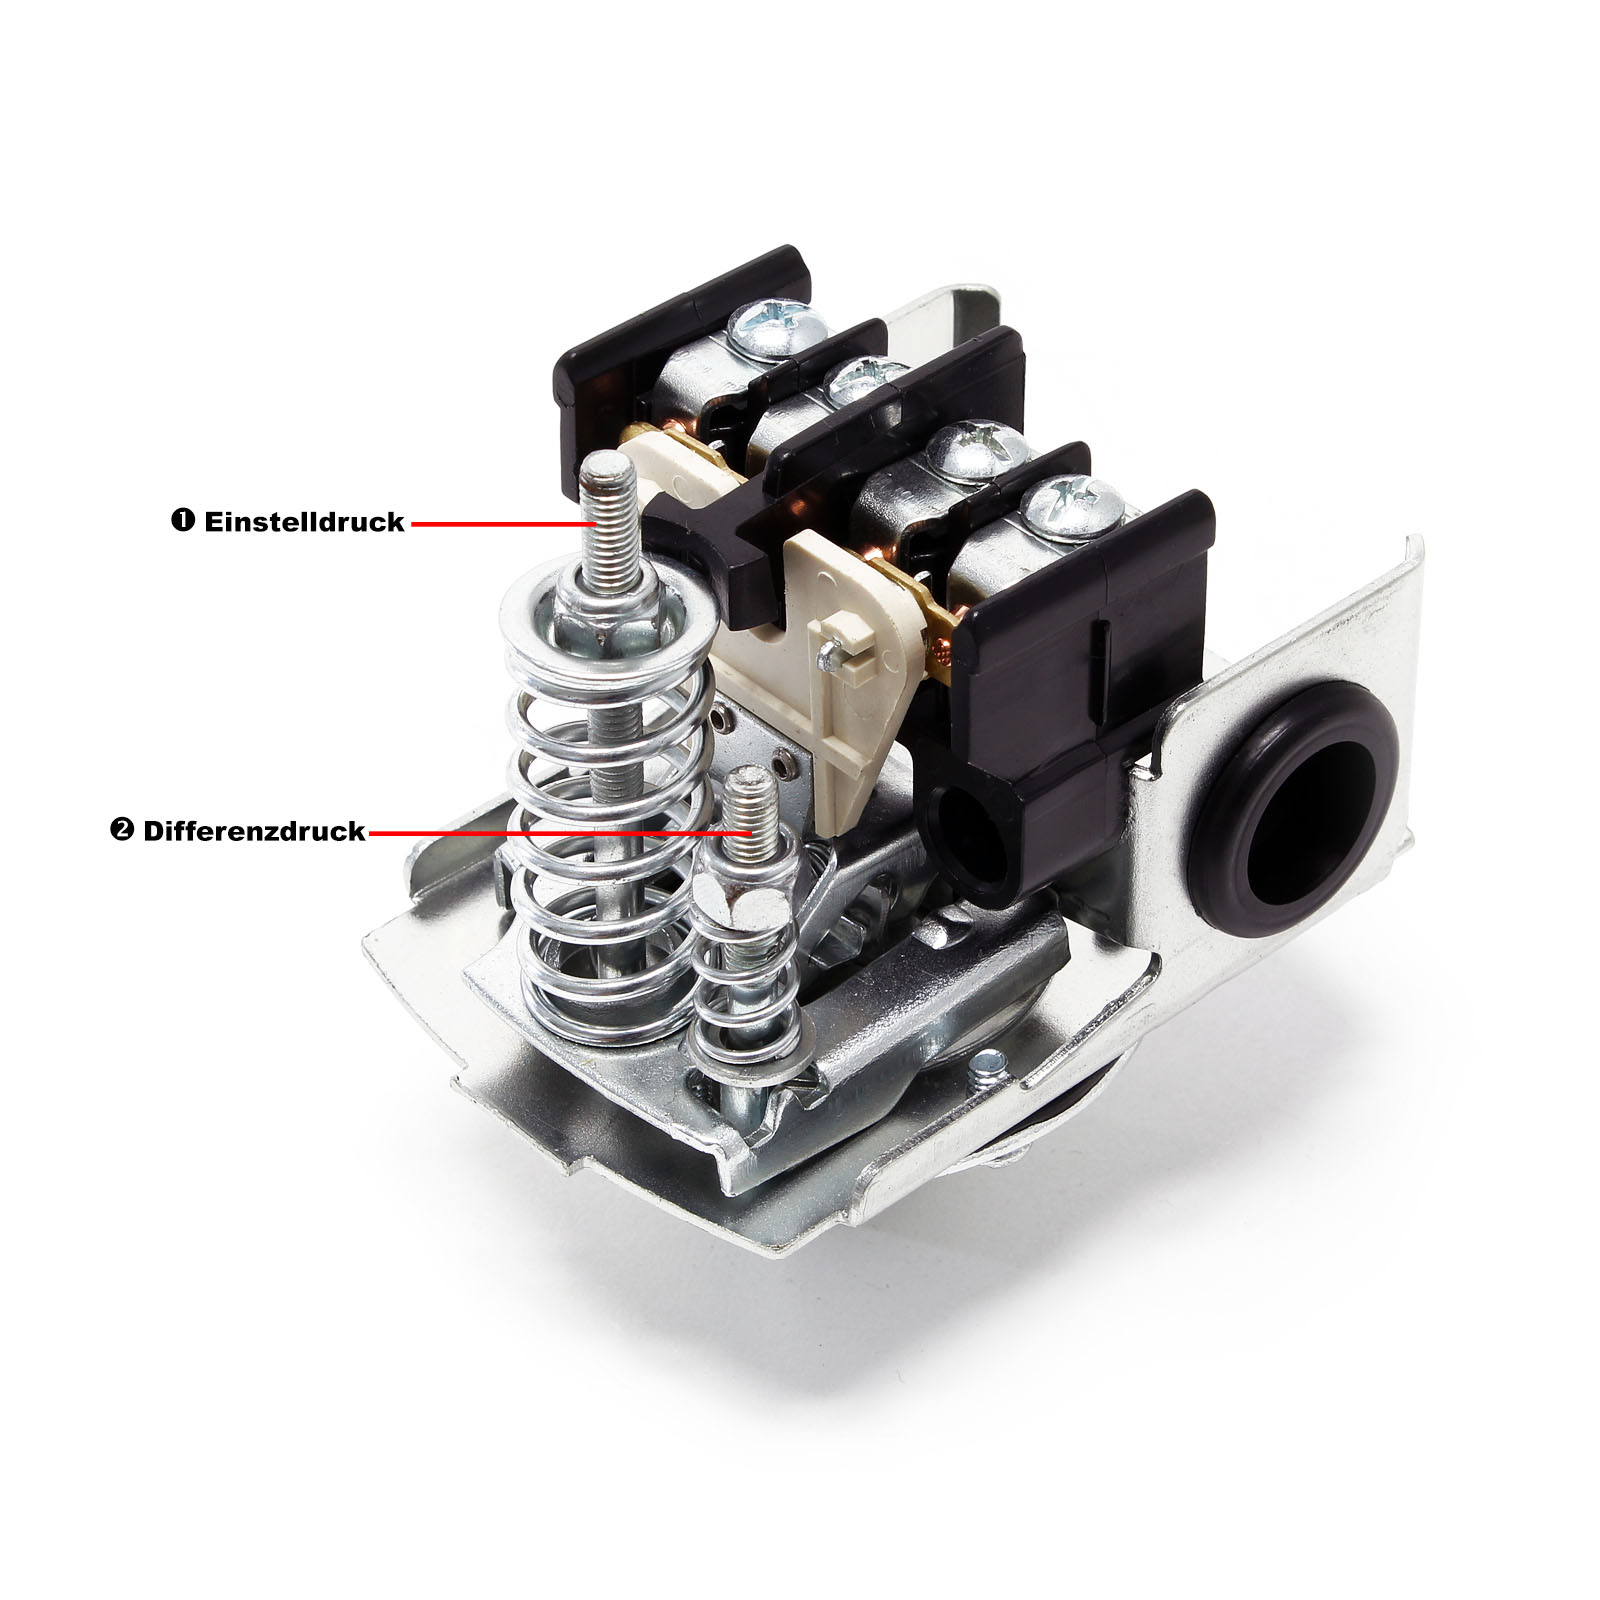 Druckschalter - Druckwächter - SK-2 - 1-phasig für Kompressoren 2